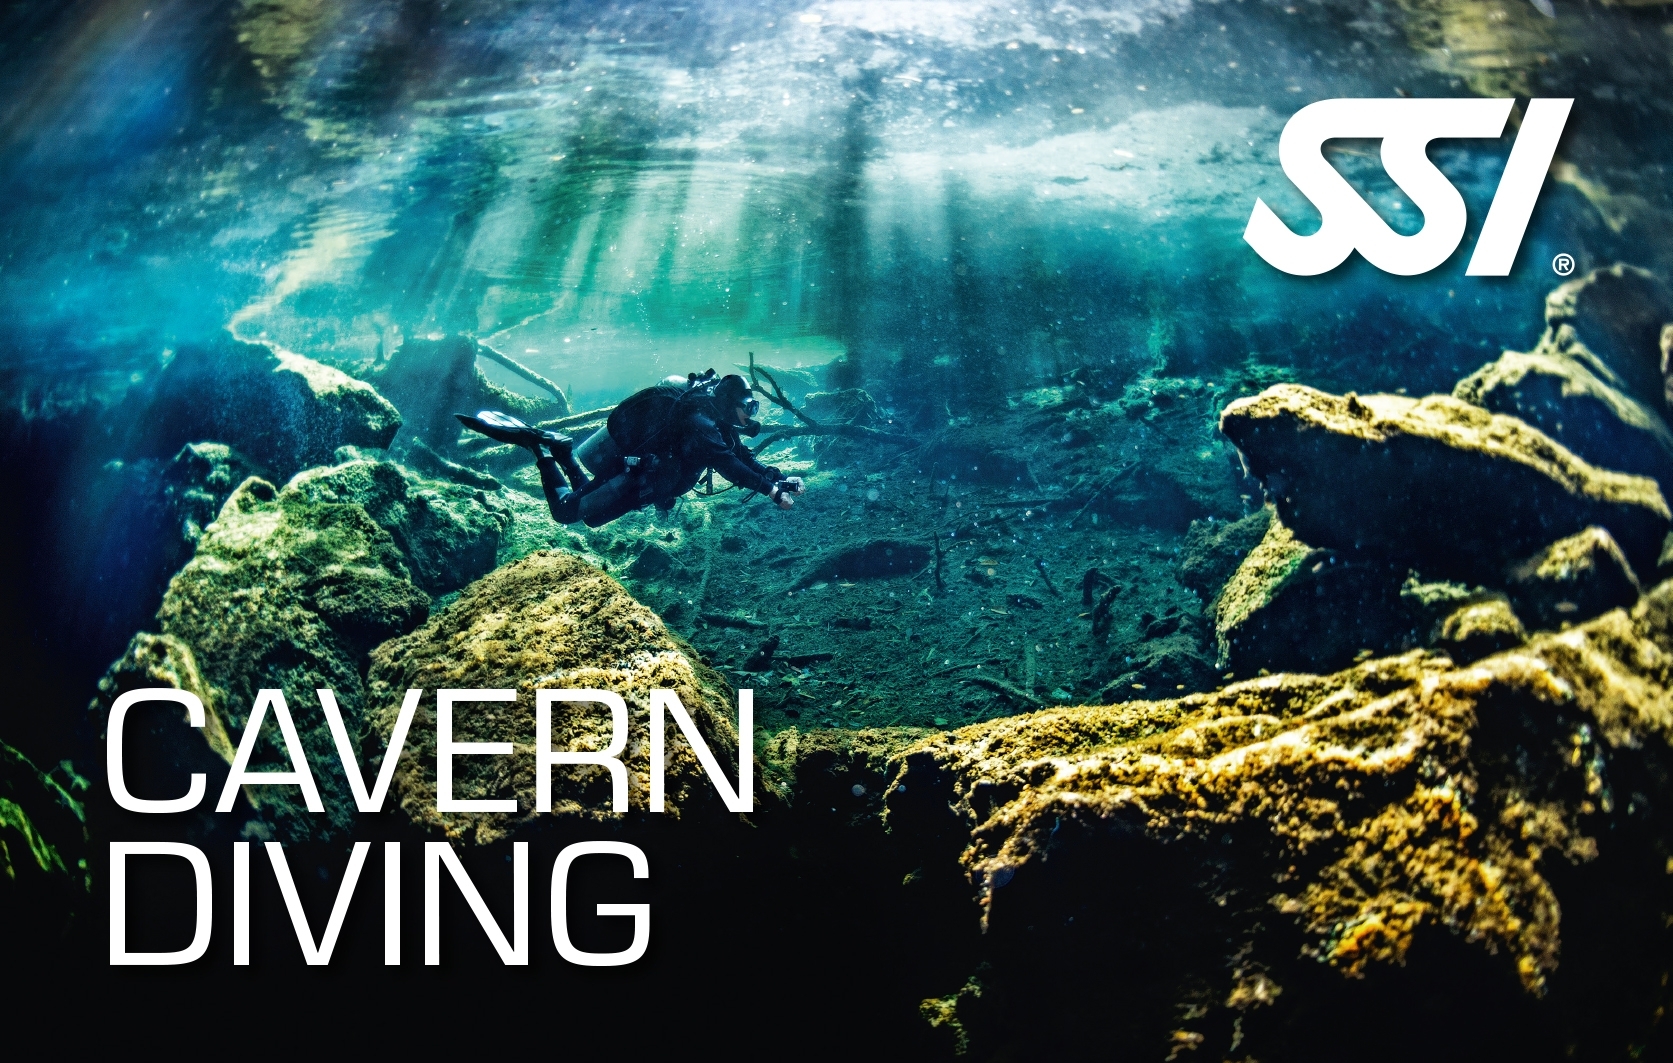 SSI Cavern Diver